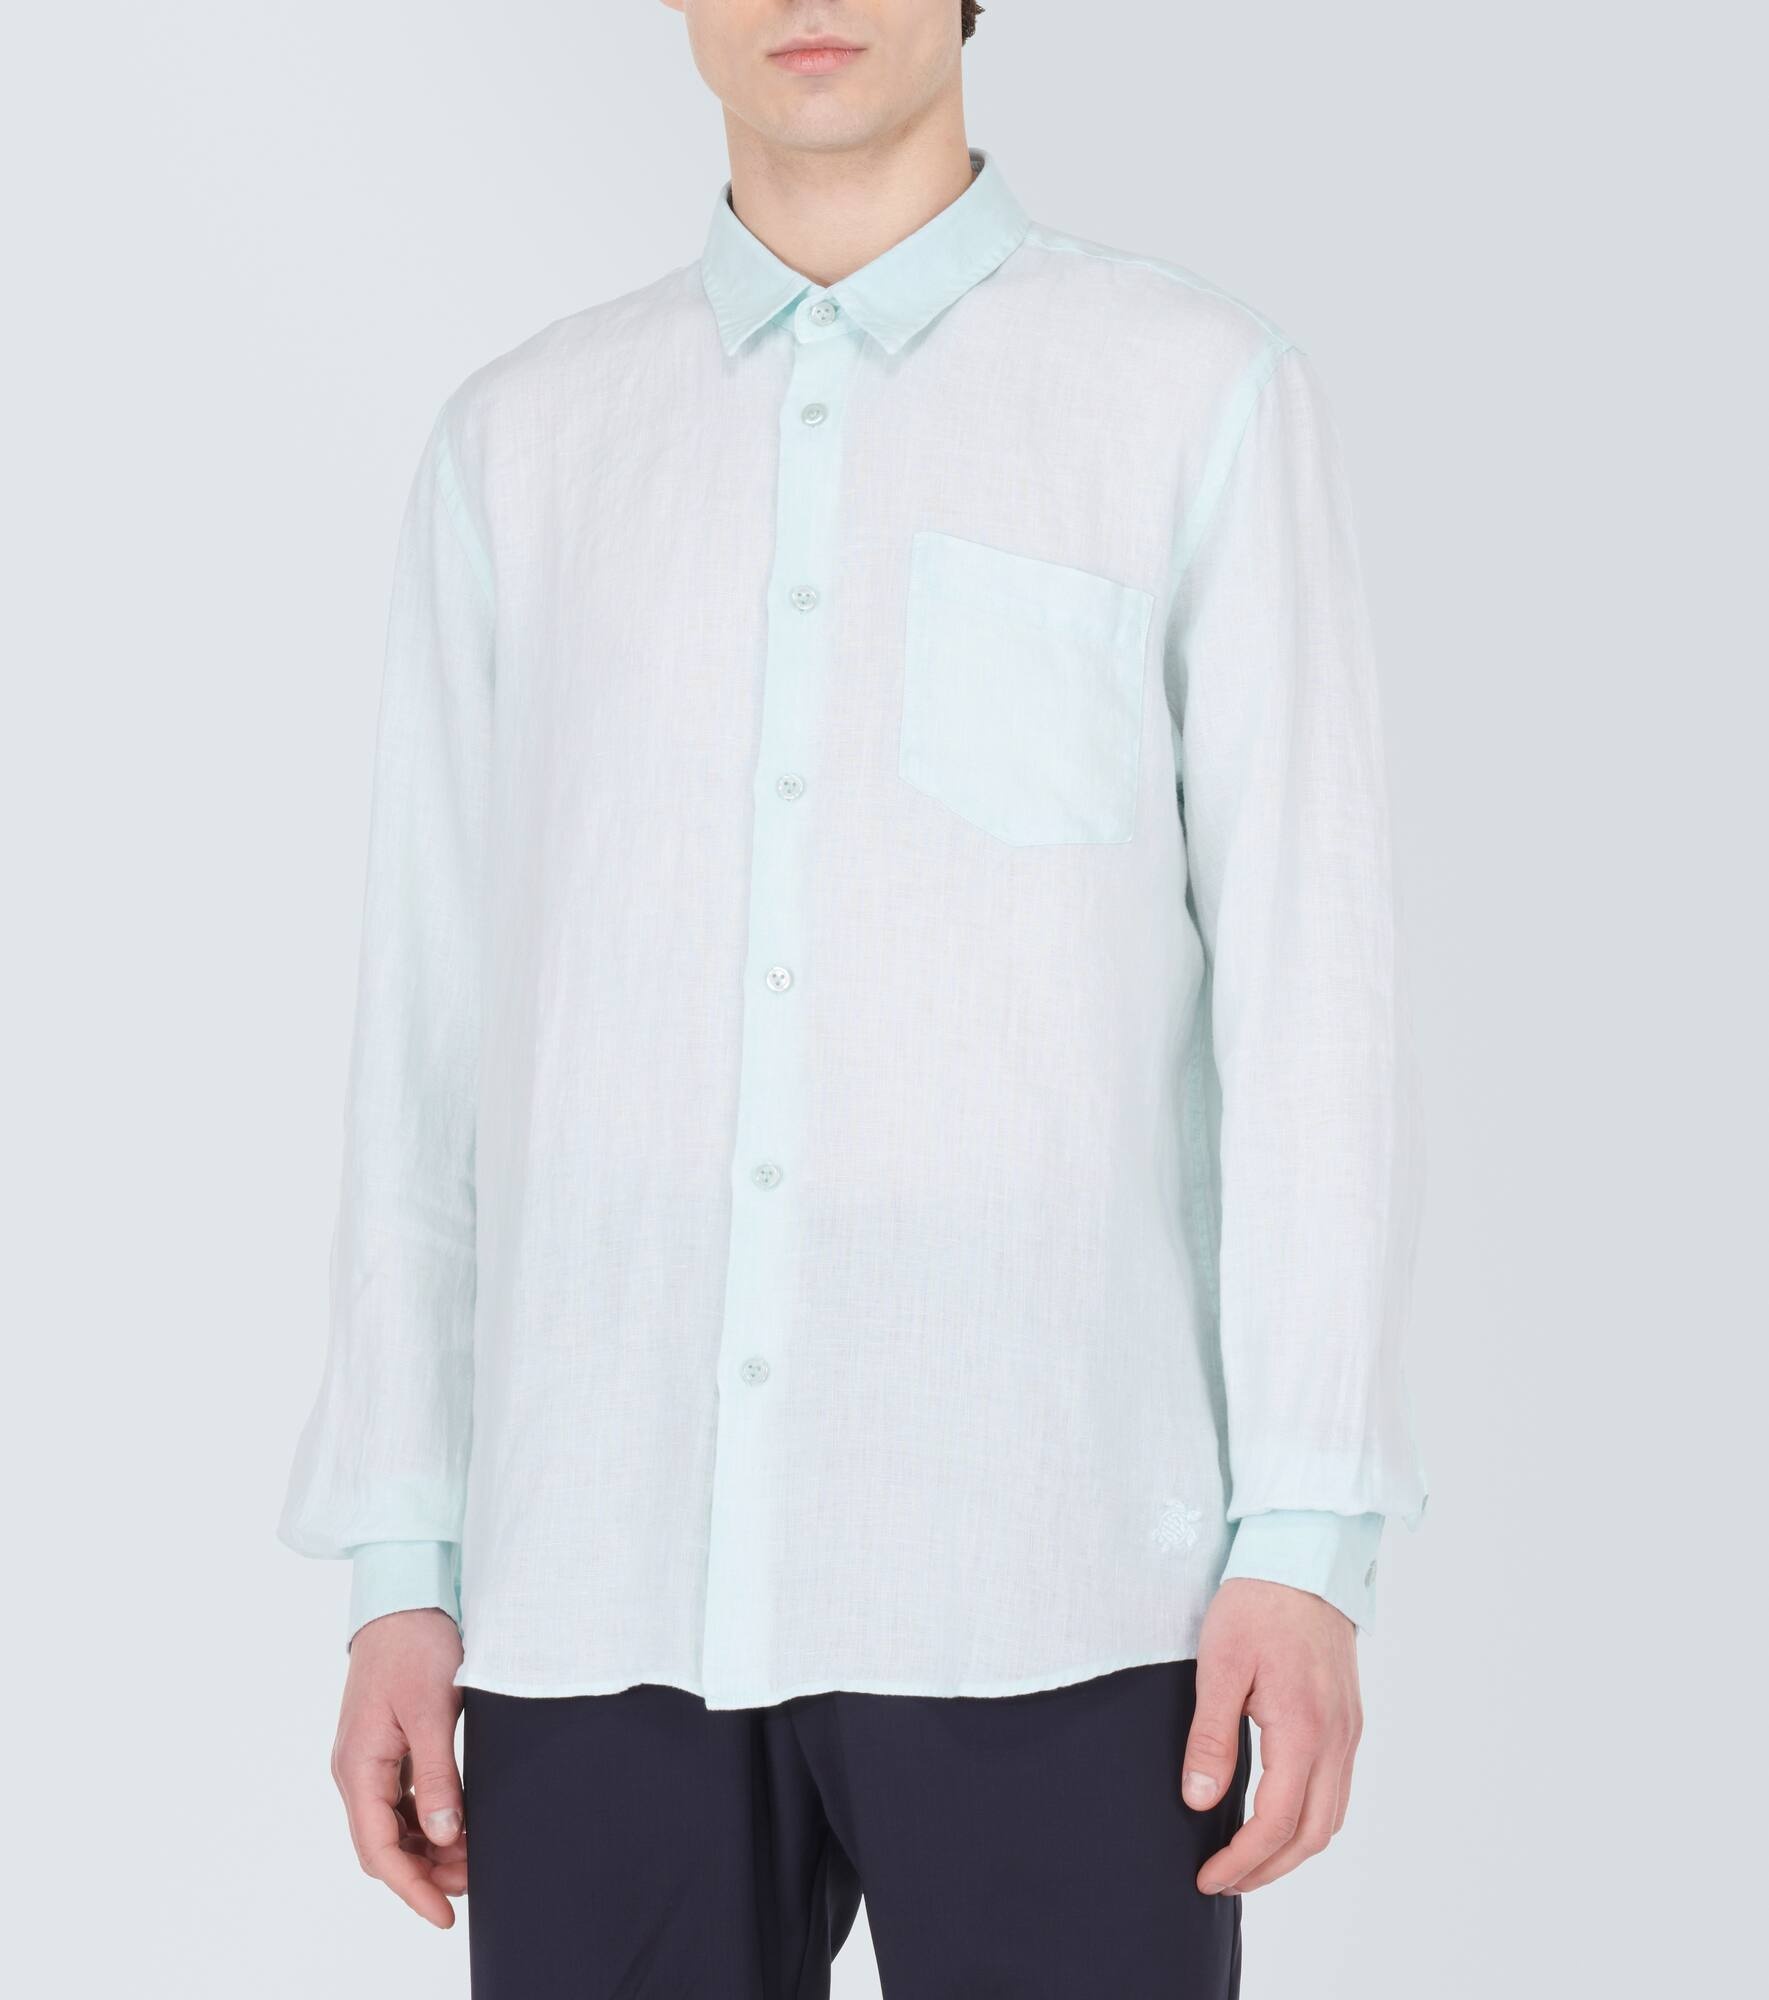 Caroubis linen shirt - 3